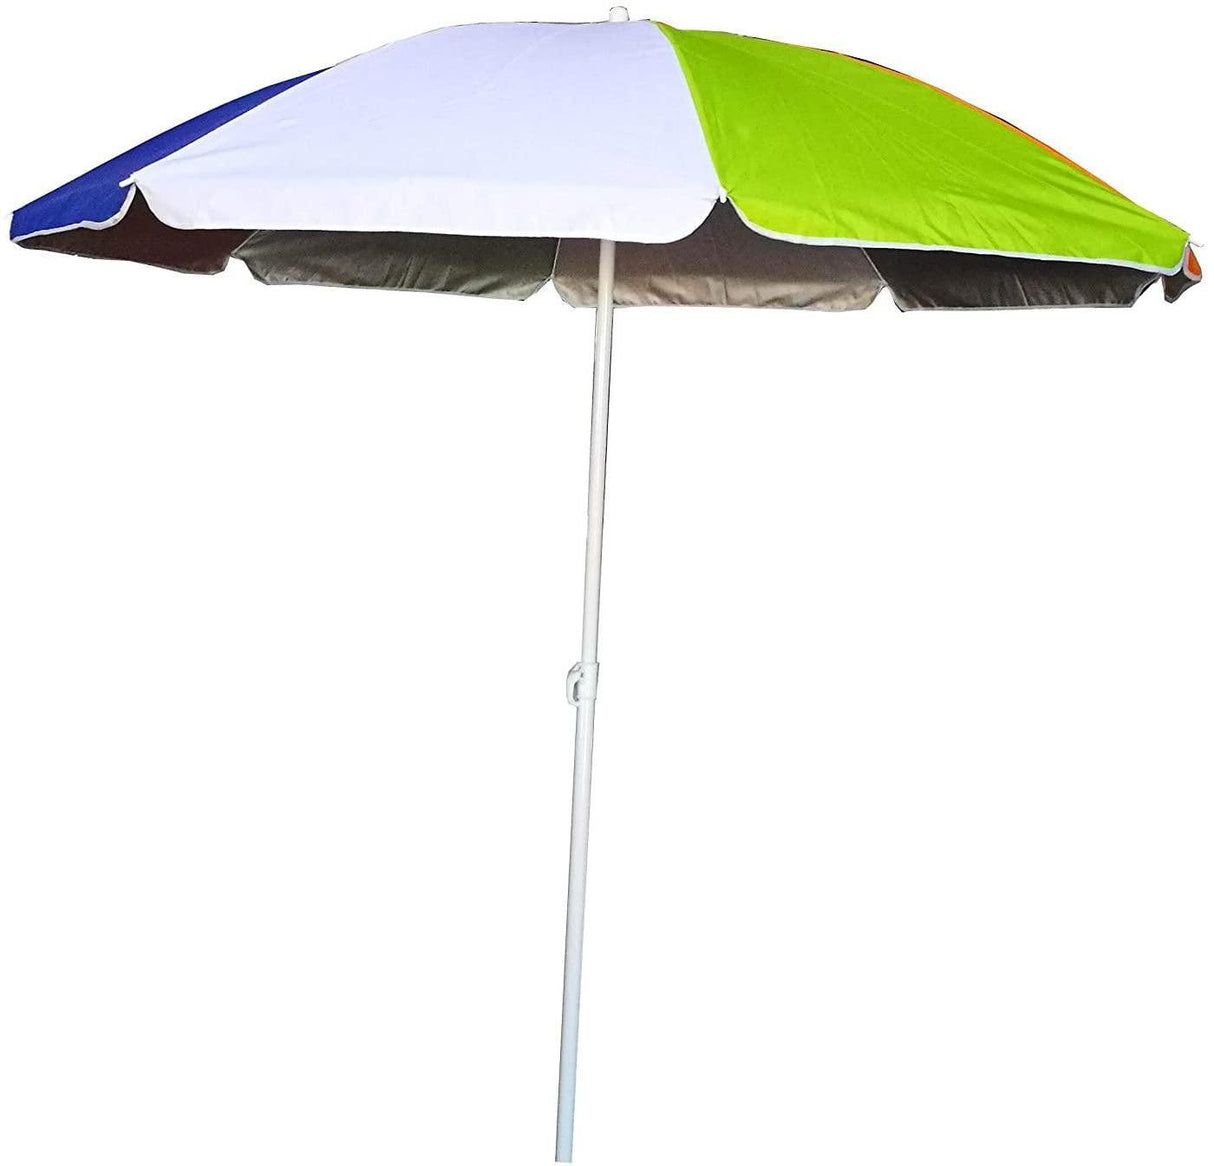 Procamp Beach Umbrella - Small